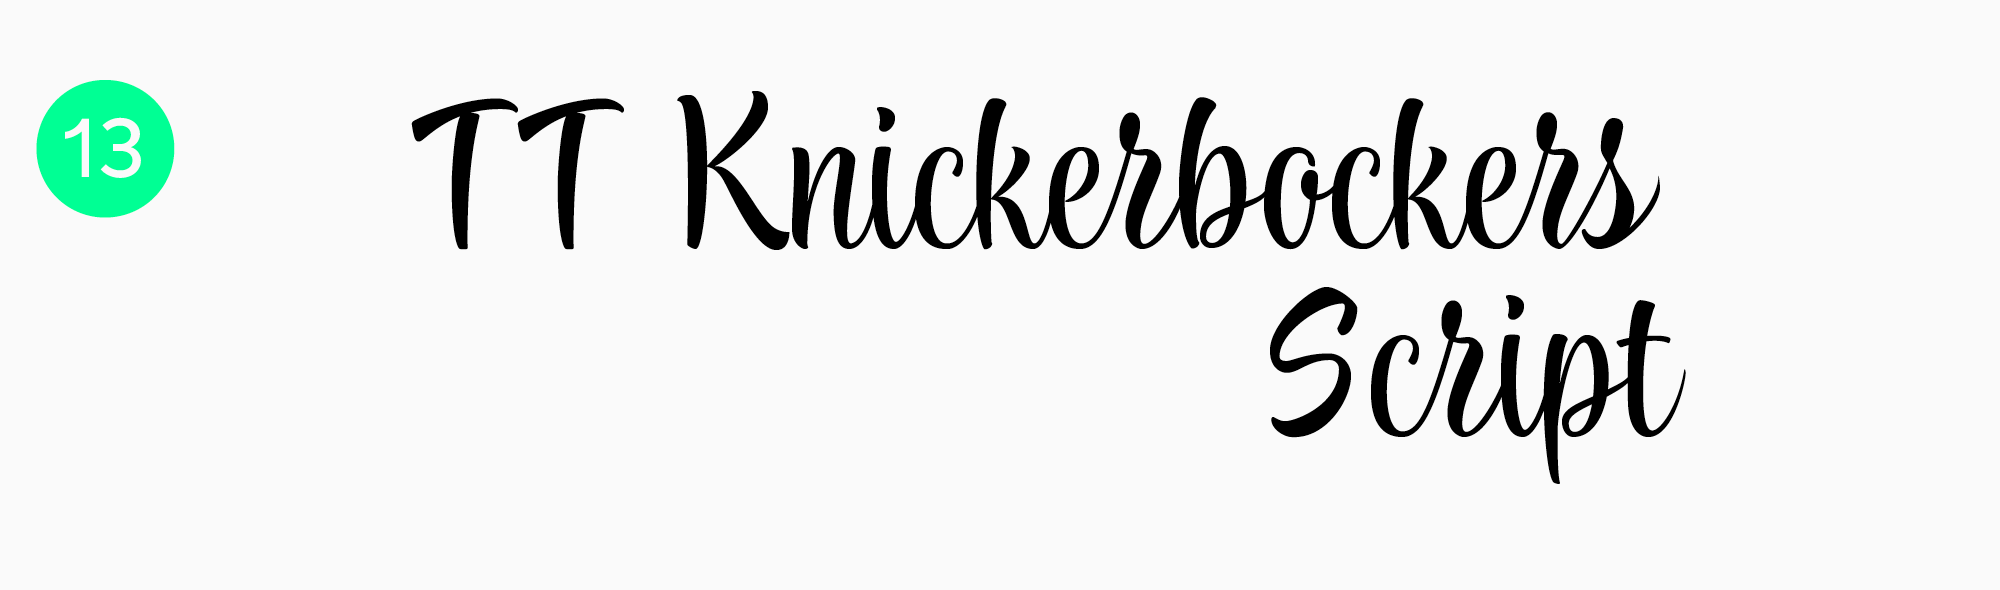 Best script fonts for logos TT Knickerbockers Script